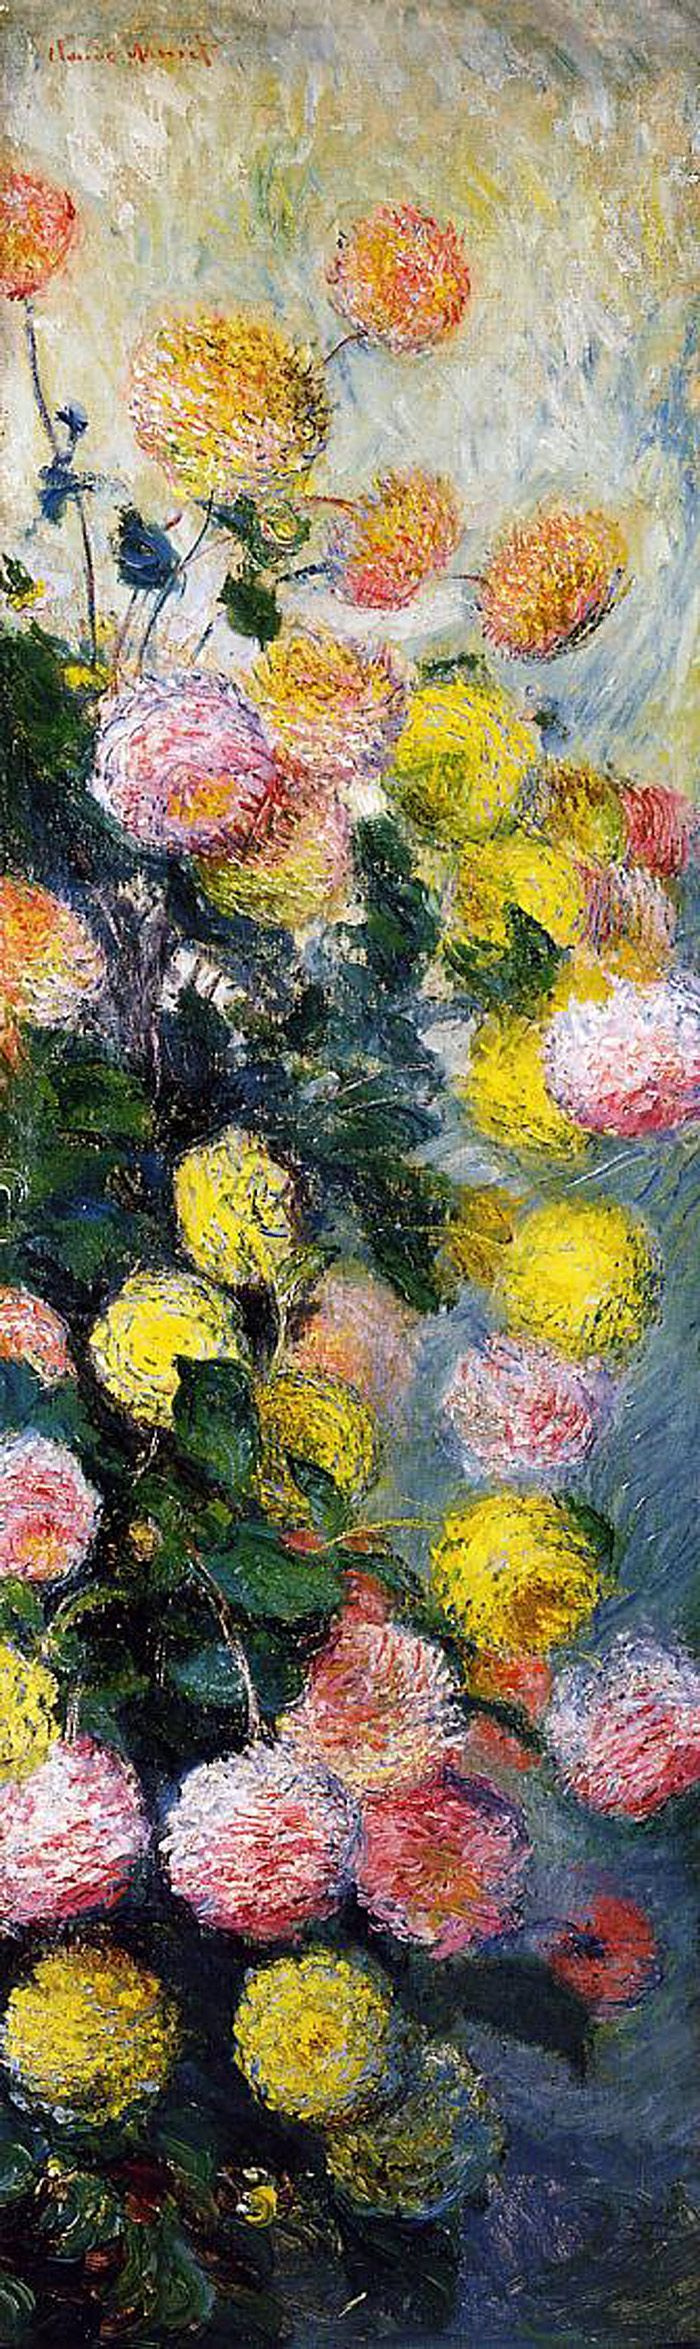 Claude Monet. Dahlias